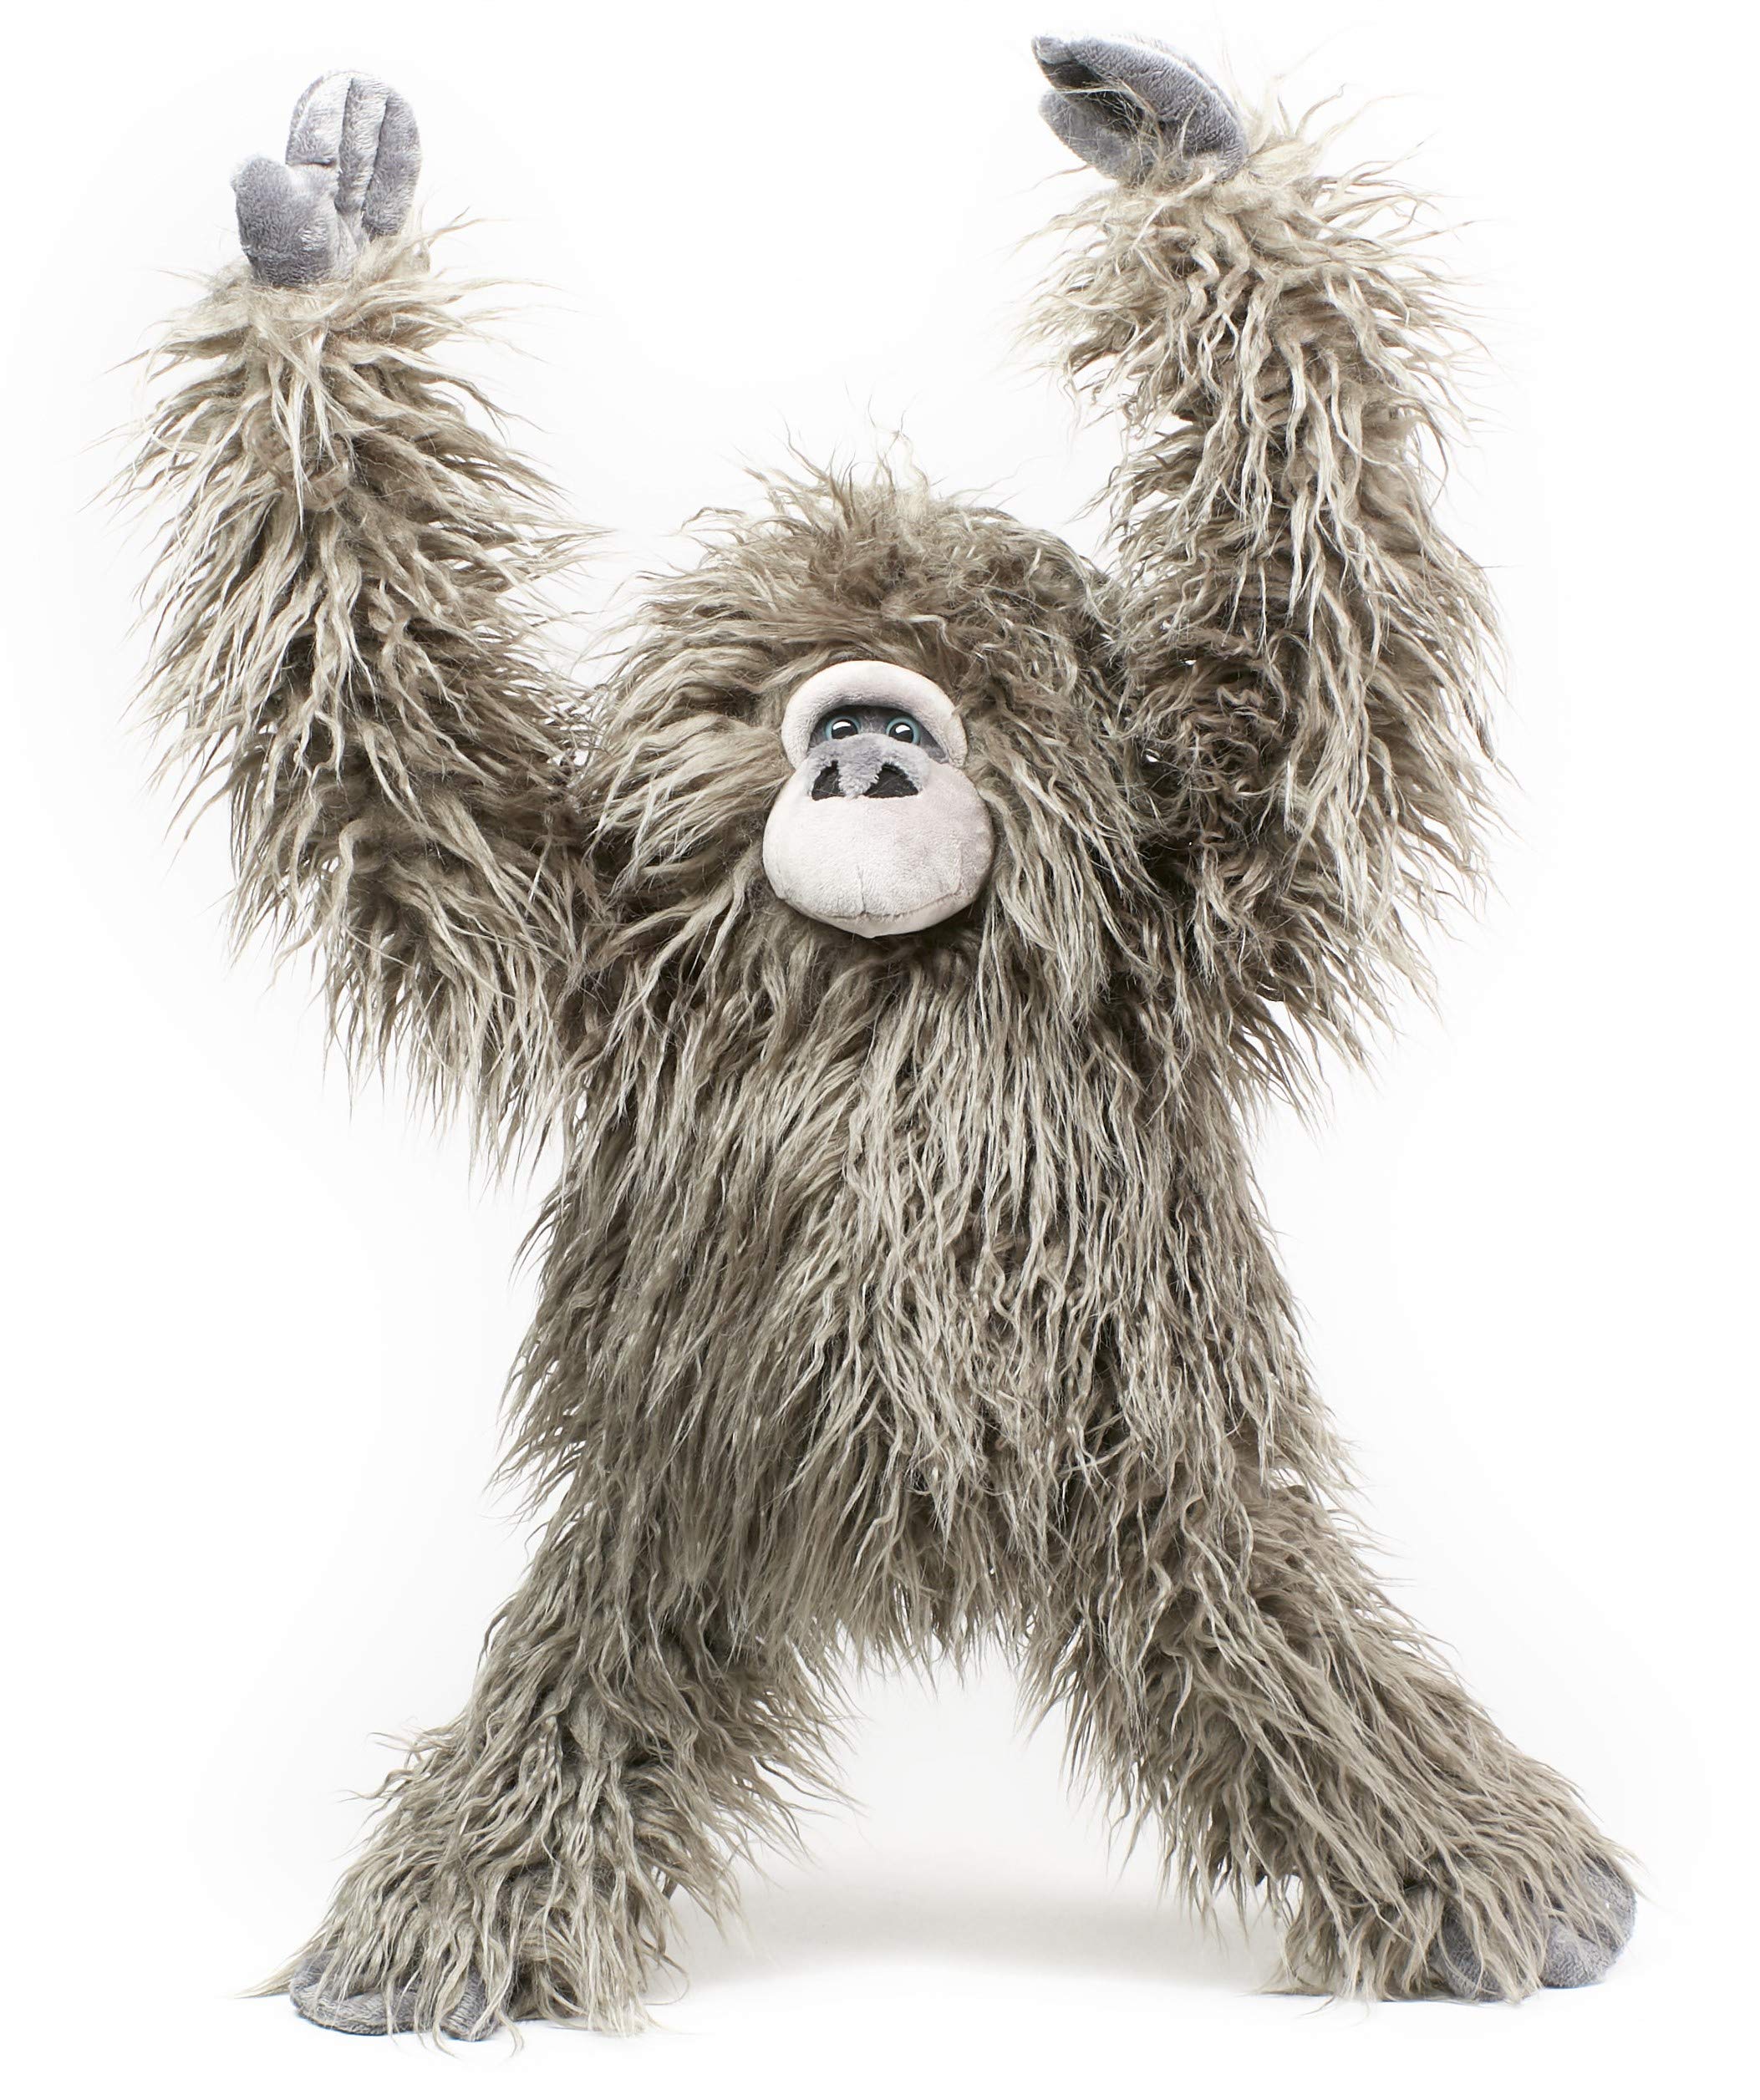 Uni-Toys - Raggy, Gorilla mit Klettverschluss an den Händen - 55 cm (Höhe) - Plüsch-AFFE - Plüschtier, Kuscheltier